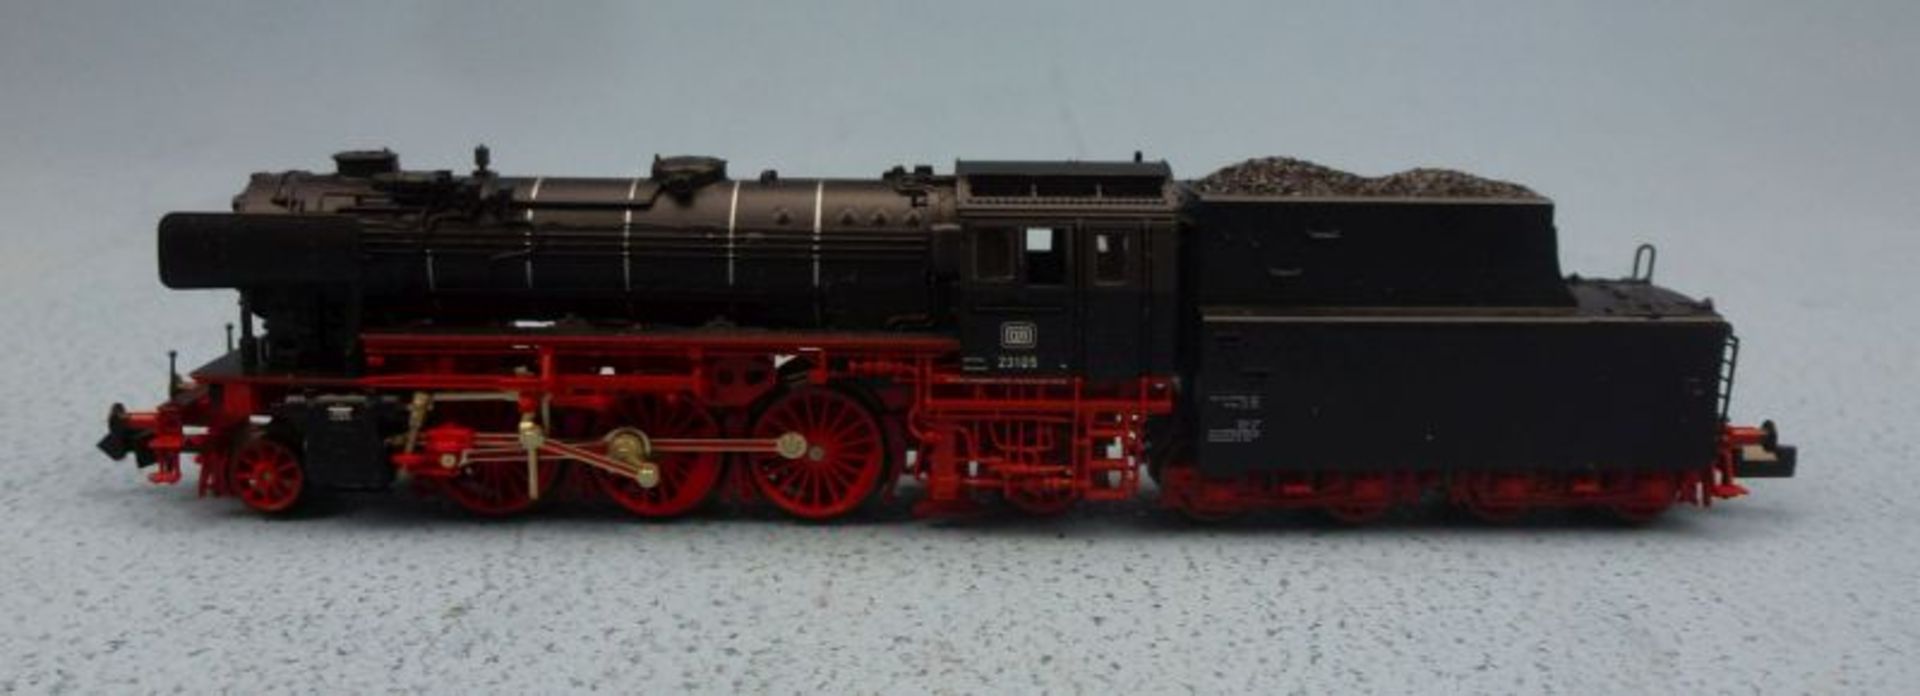 Schlepptenderlokomotive 7123, Fleischmann - Bild 2 aus 2